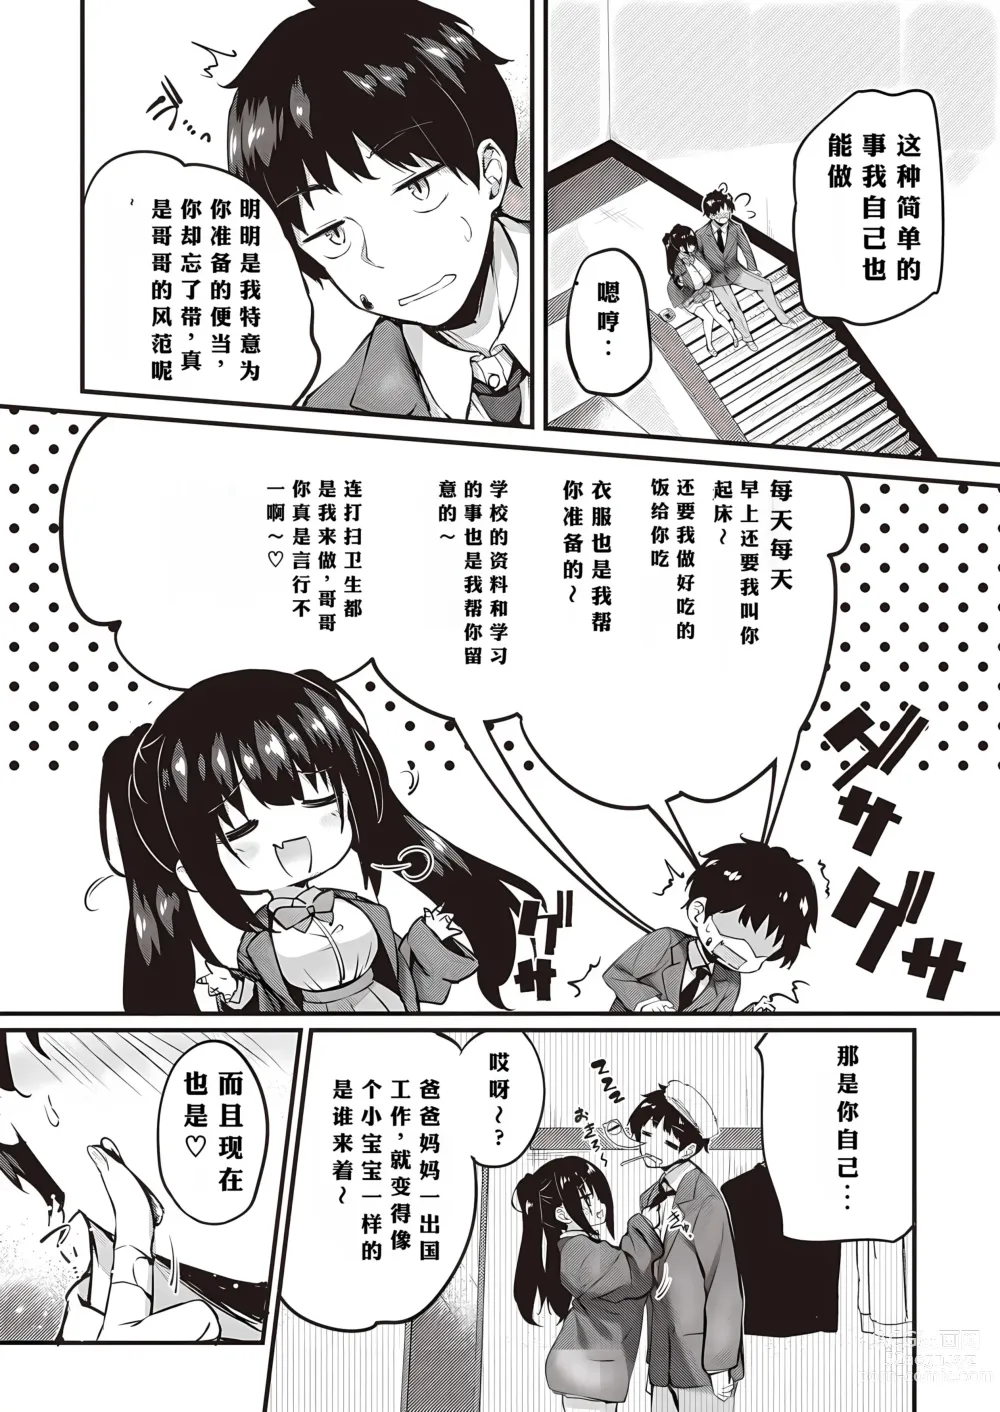 Page 2 of manga Oshiete Ageru + Motto Oshiete Ageru